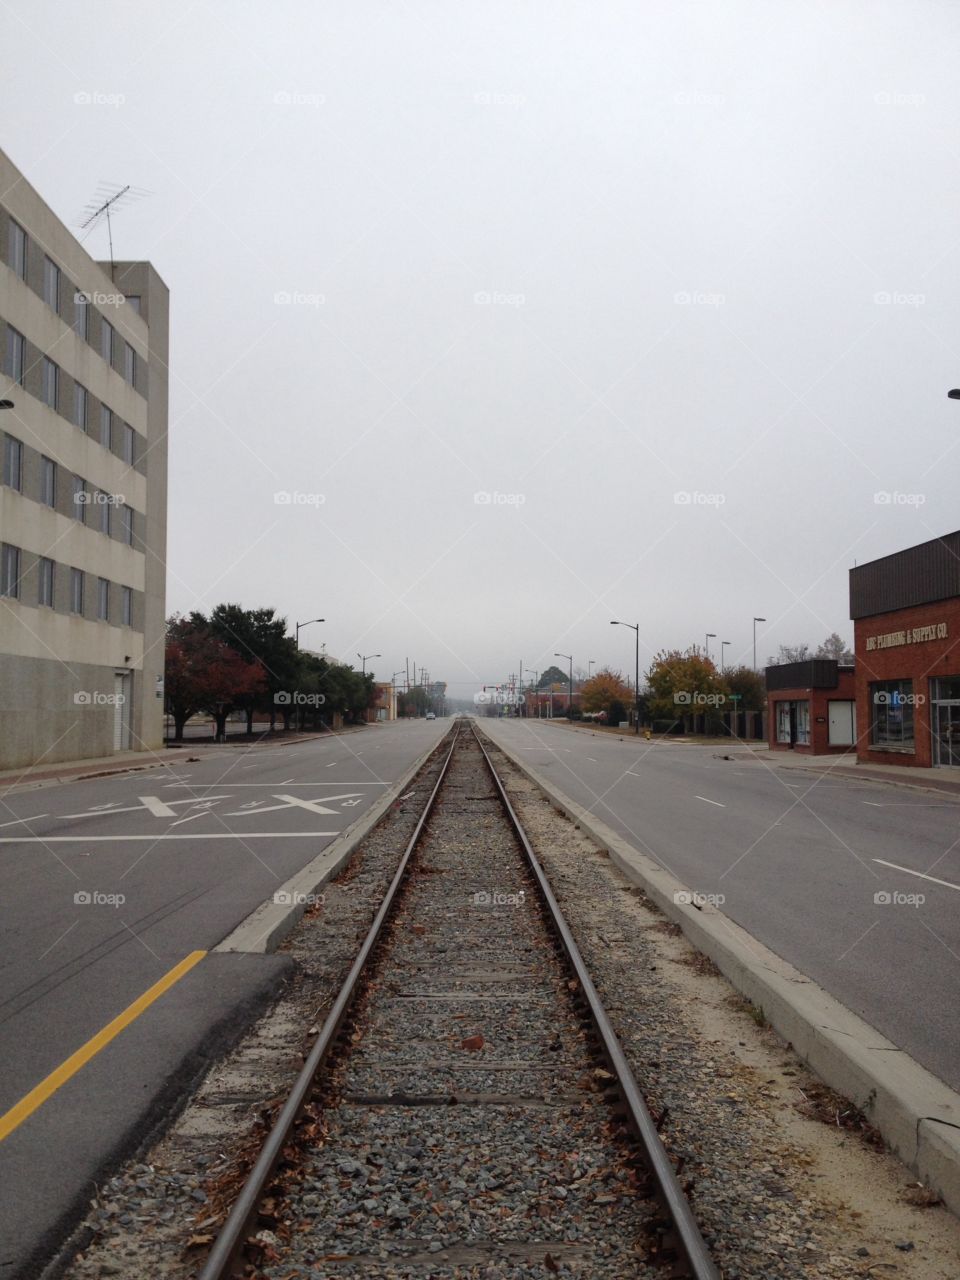 Downtown train tracks. Train tracks alongside road in downtown Fayetteville, NC.